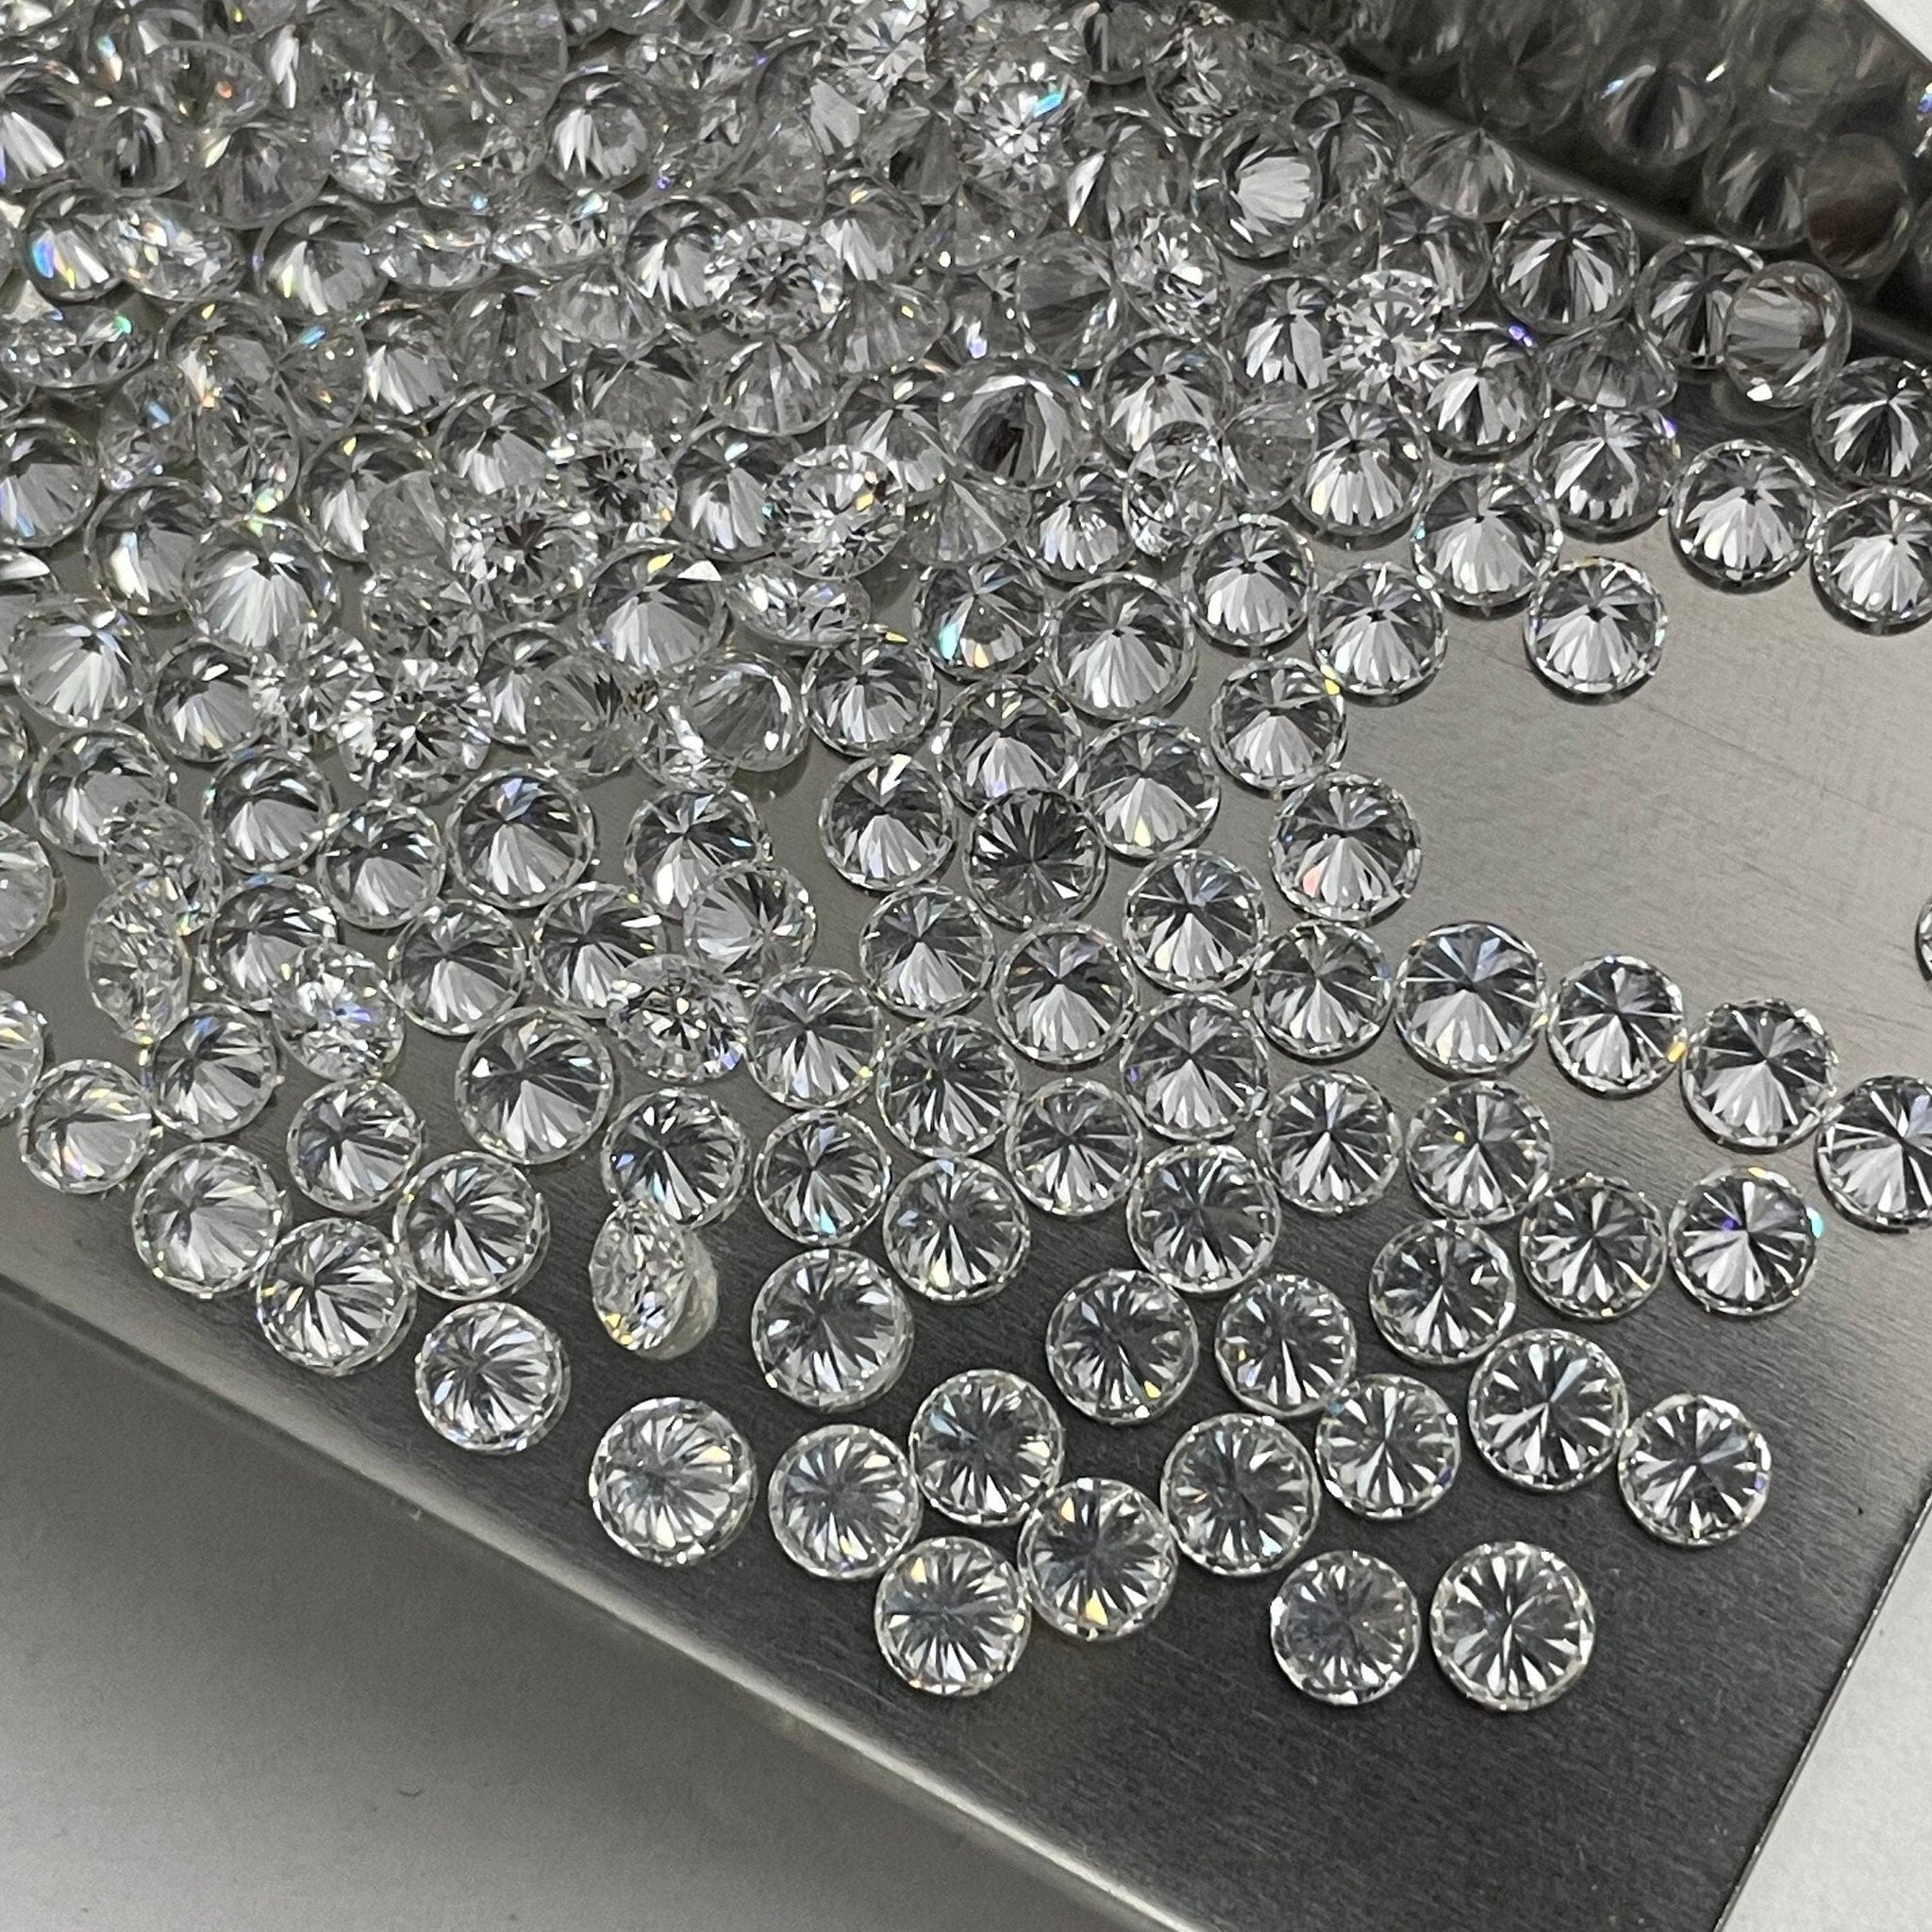 Diamant HPHT de 2,5 mm à 3,00 mm, diamant de laboratoire de la meilleure qualité, diamant en vrac CVD de pureté VVS - VS avec couleur DE.